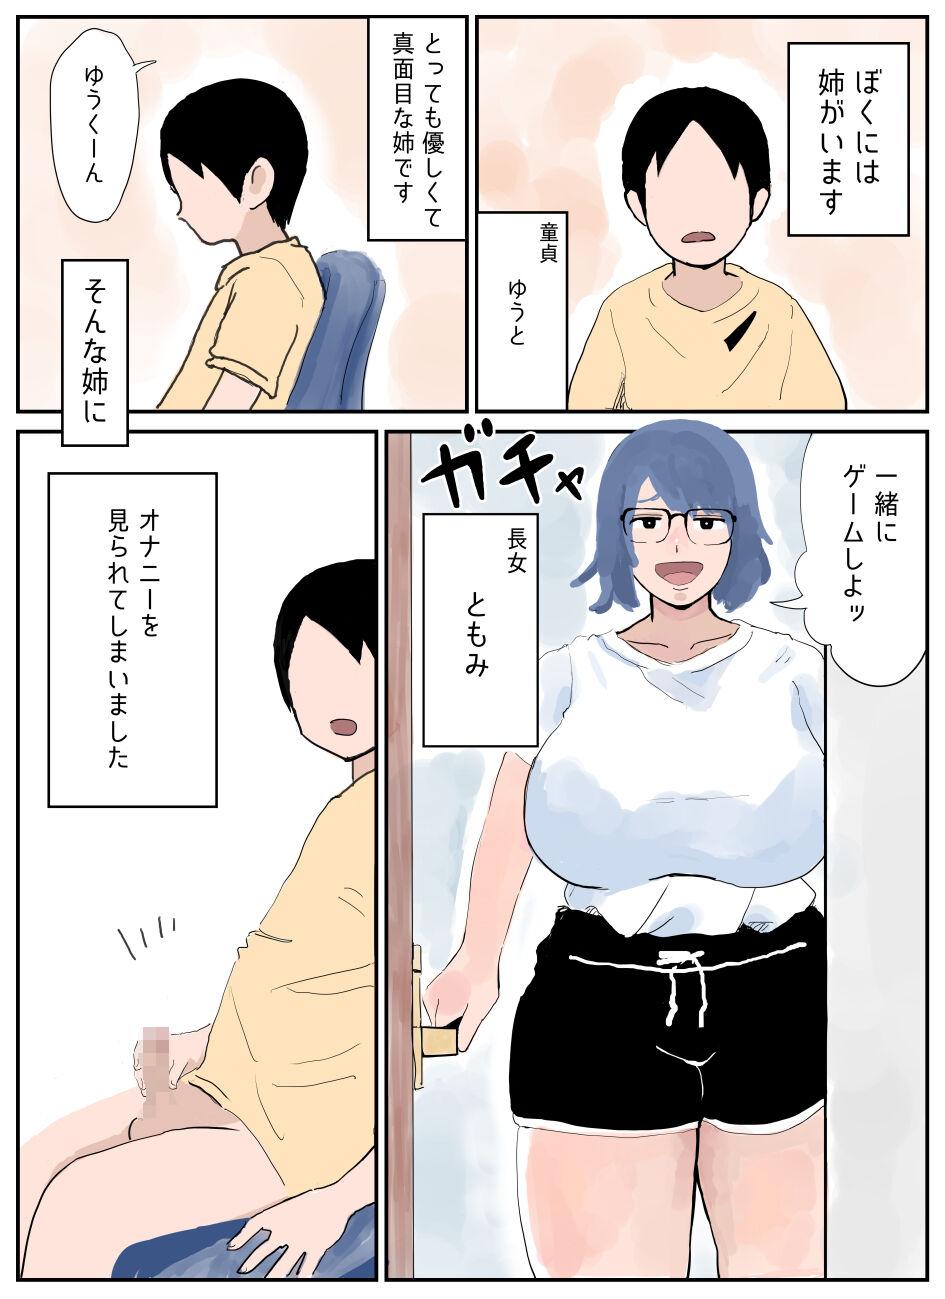 Shoplifter Boku ni wa Ane ga Imasu - Original  - Page 2